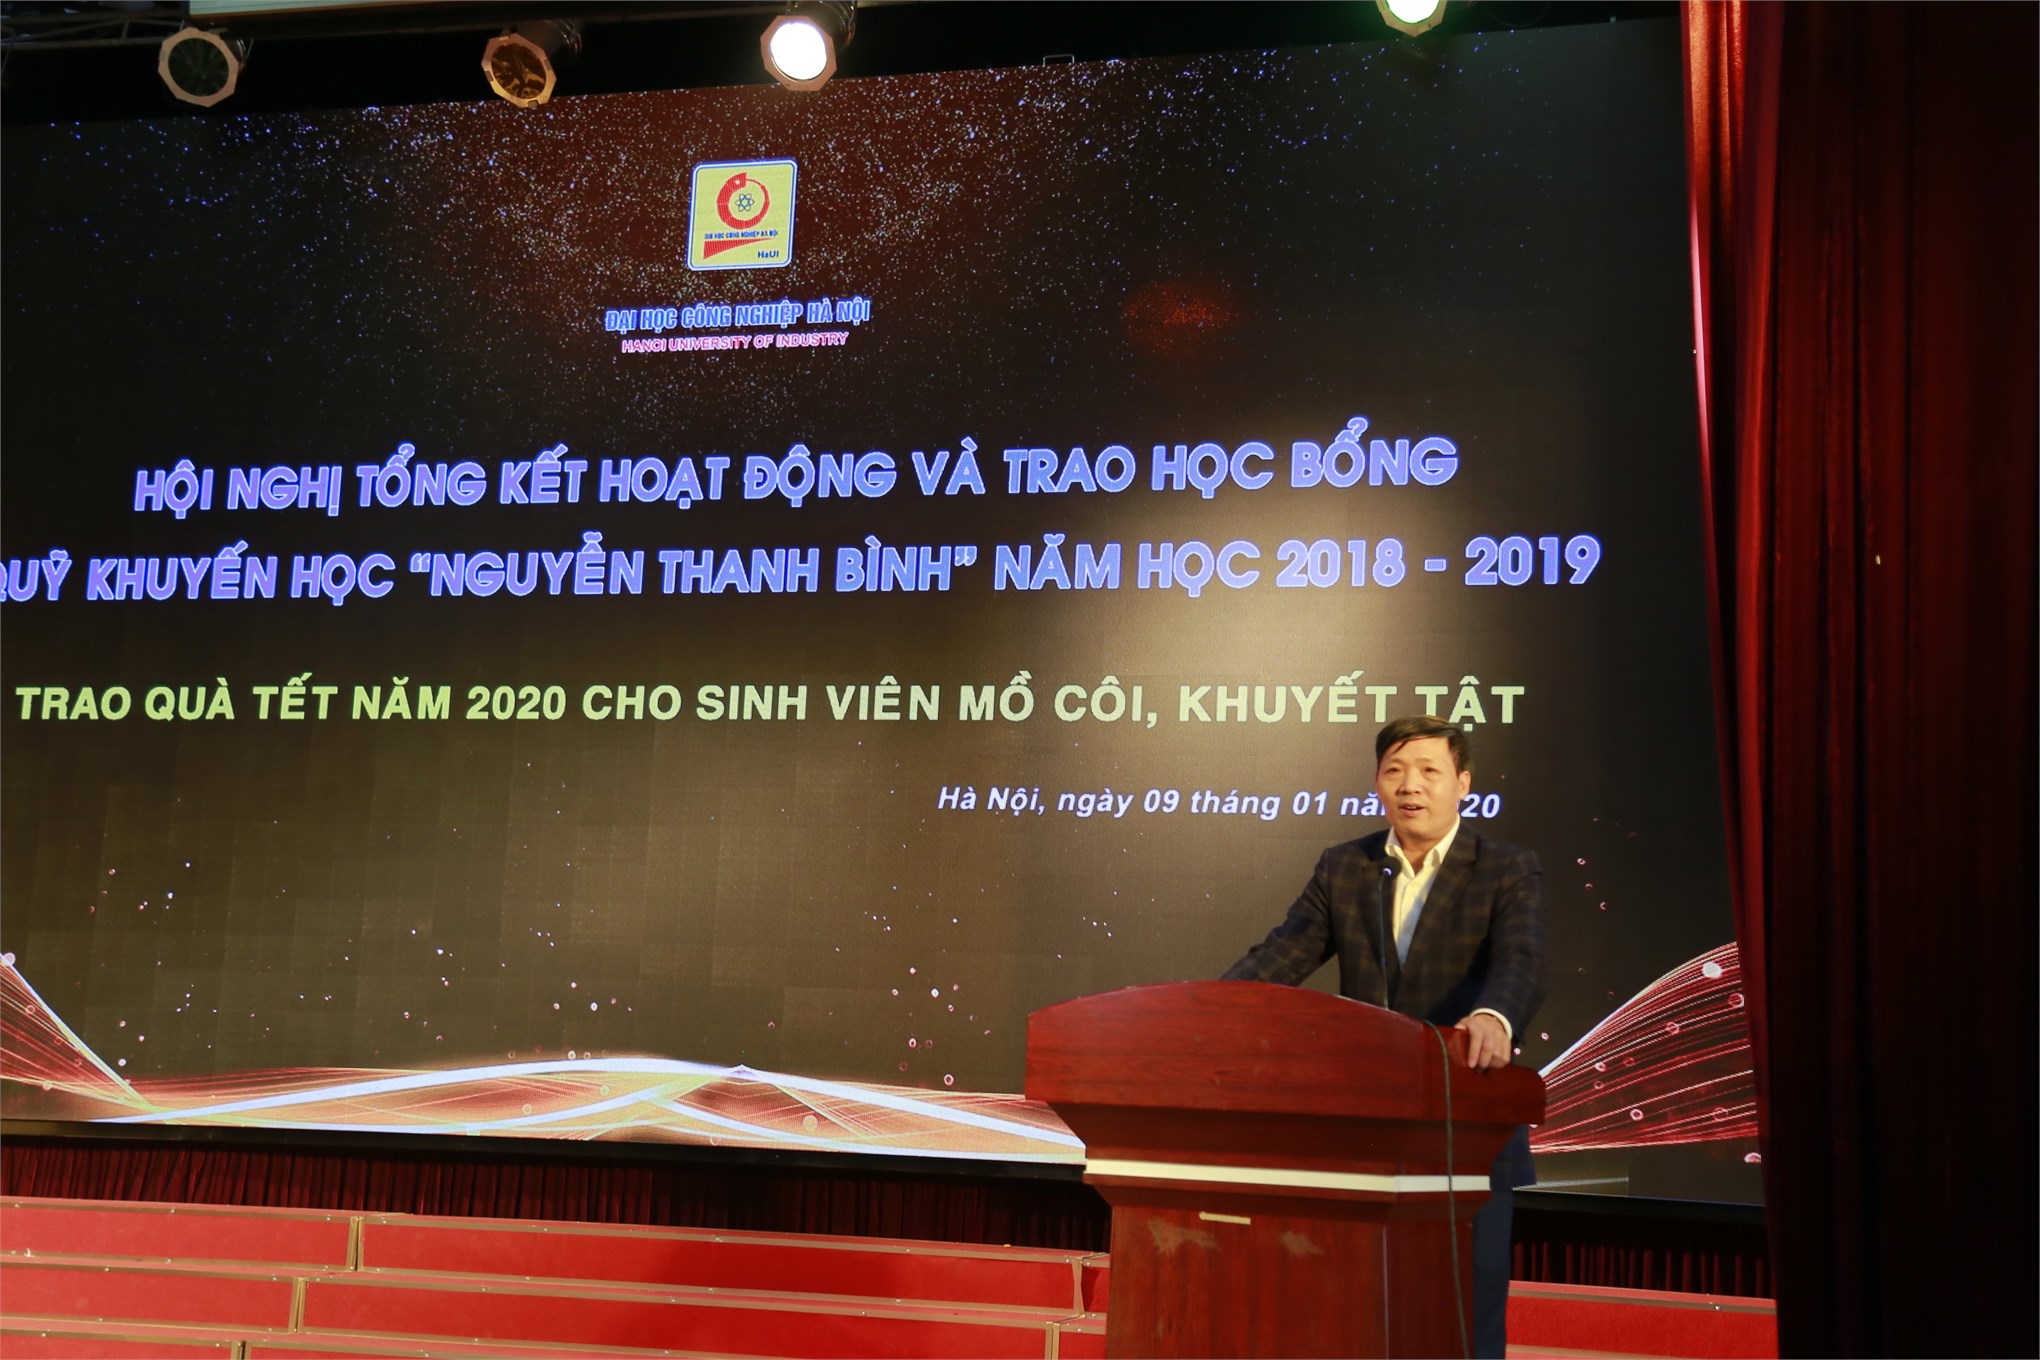 Tổng kết hoạt động và trao học bổng Quỹ khuyến học `Nguyễn Thanh Bình` năm học 2018 - 2019